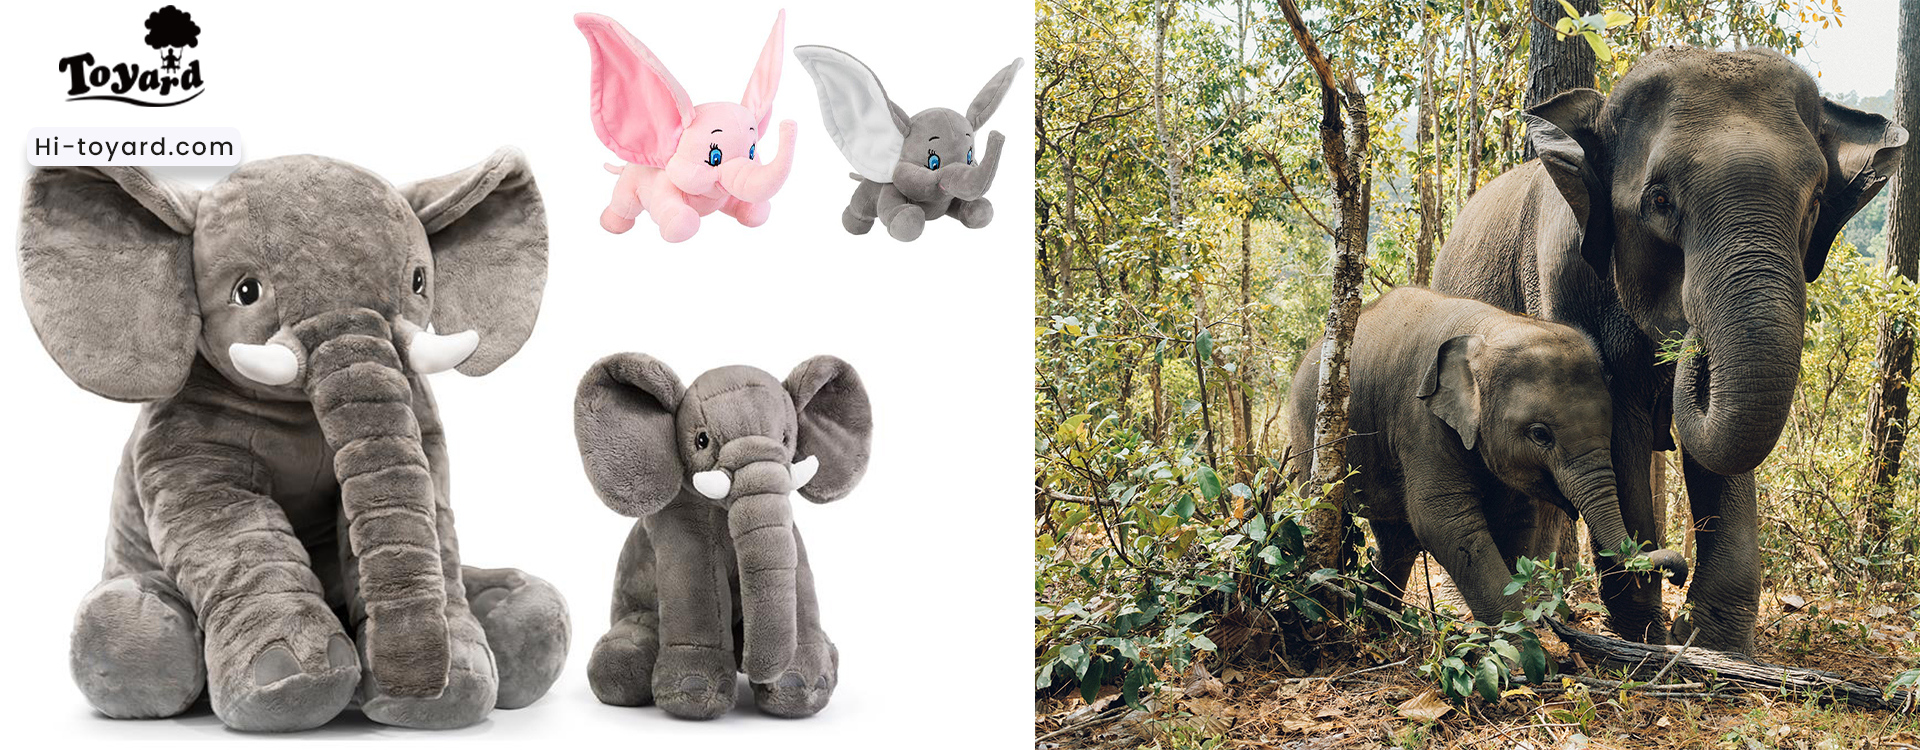 custom plushies big elephant soft toy to raise awareness of elephant conservation